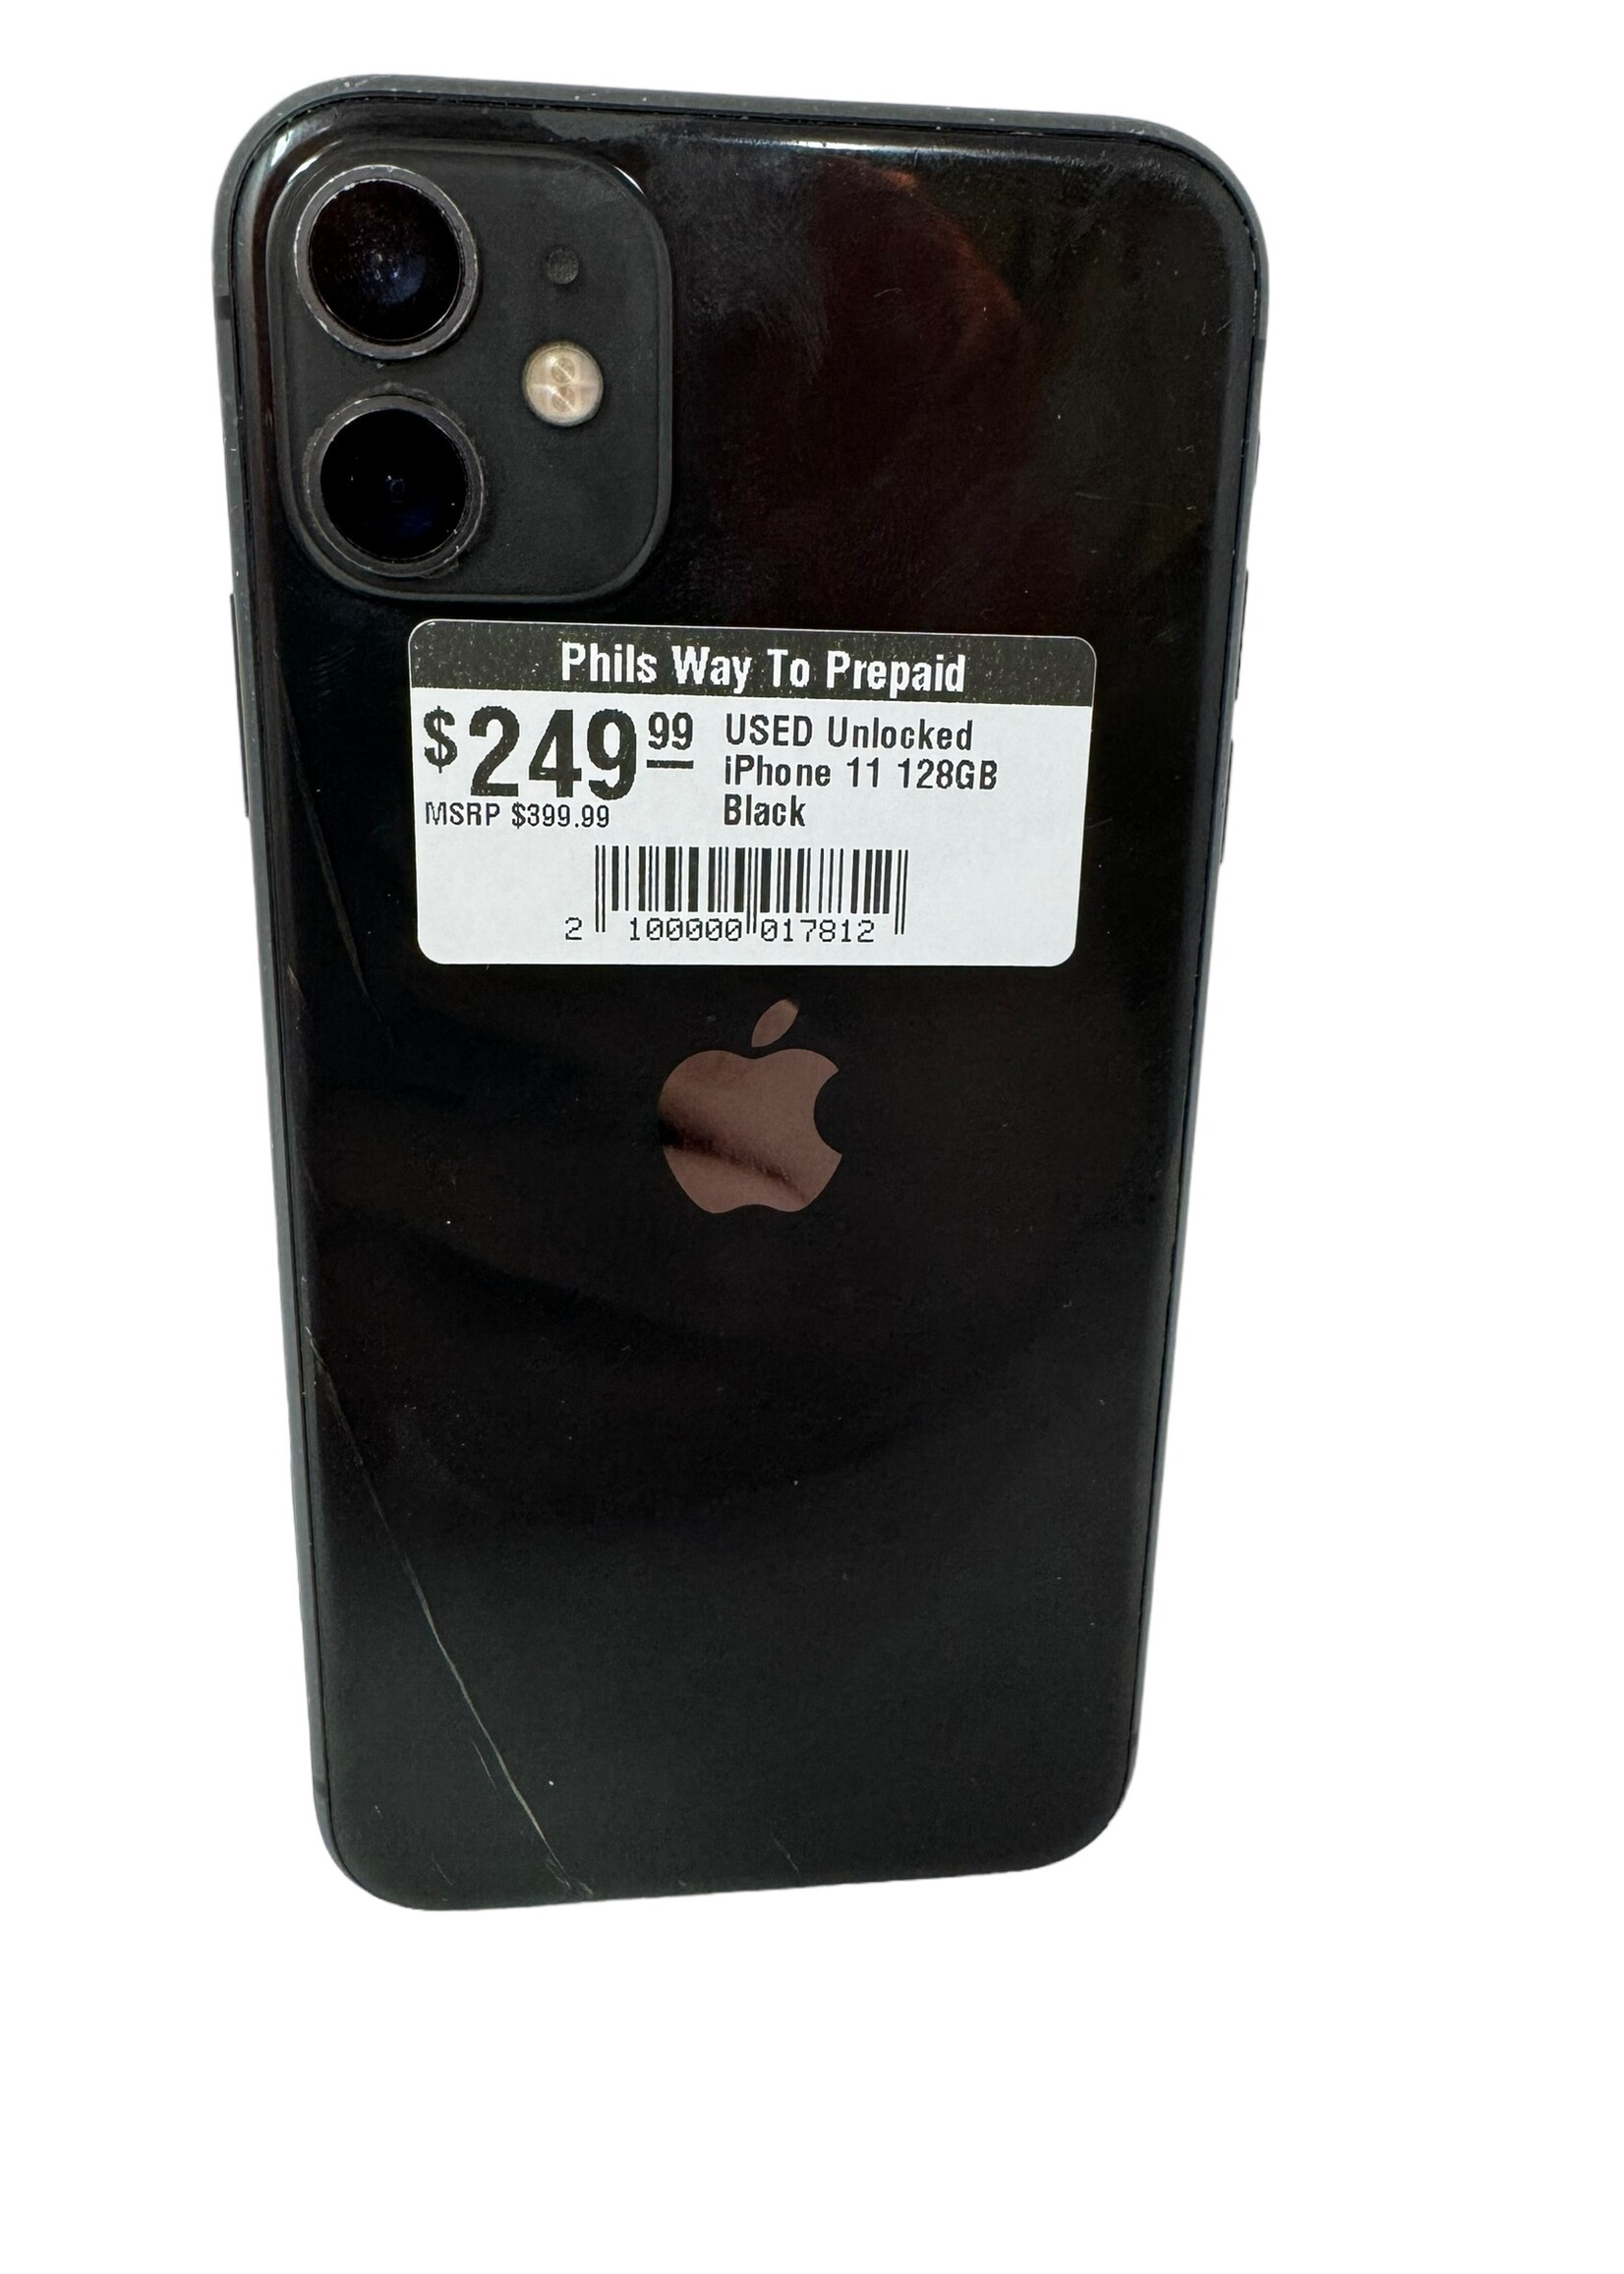 Apple USED Unlocked iPhone 11 128GB Black